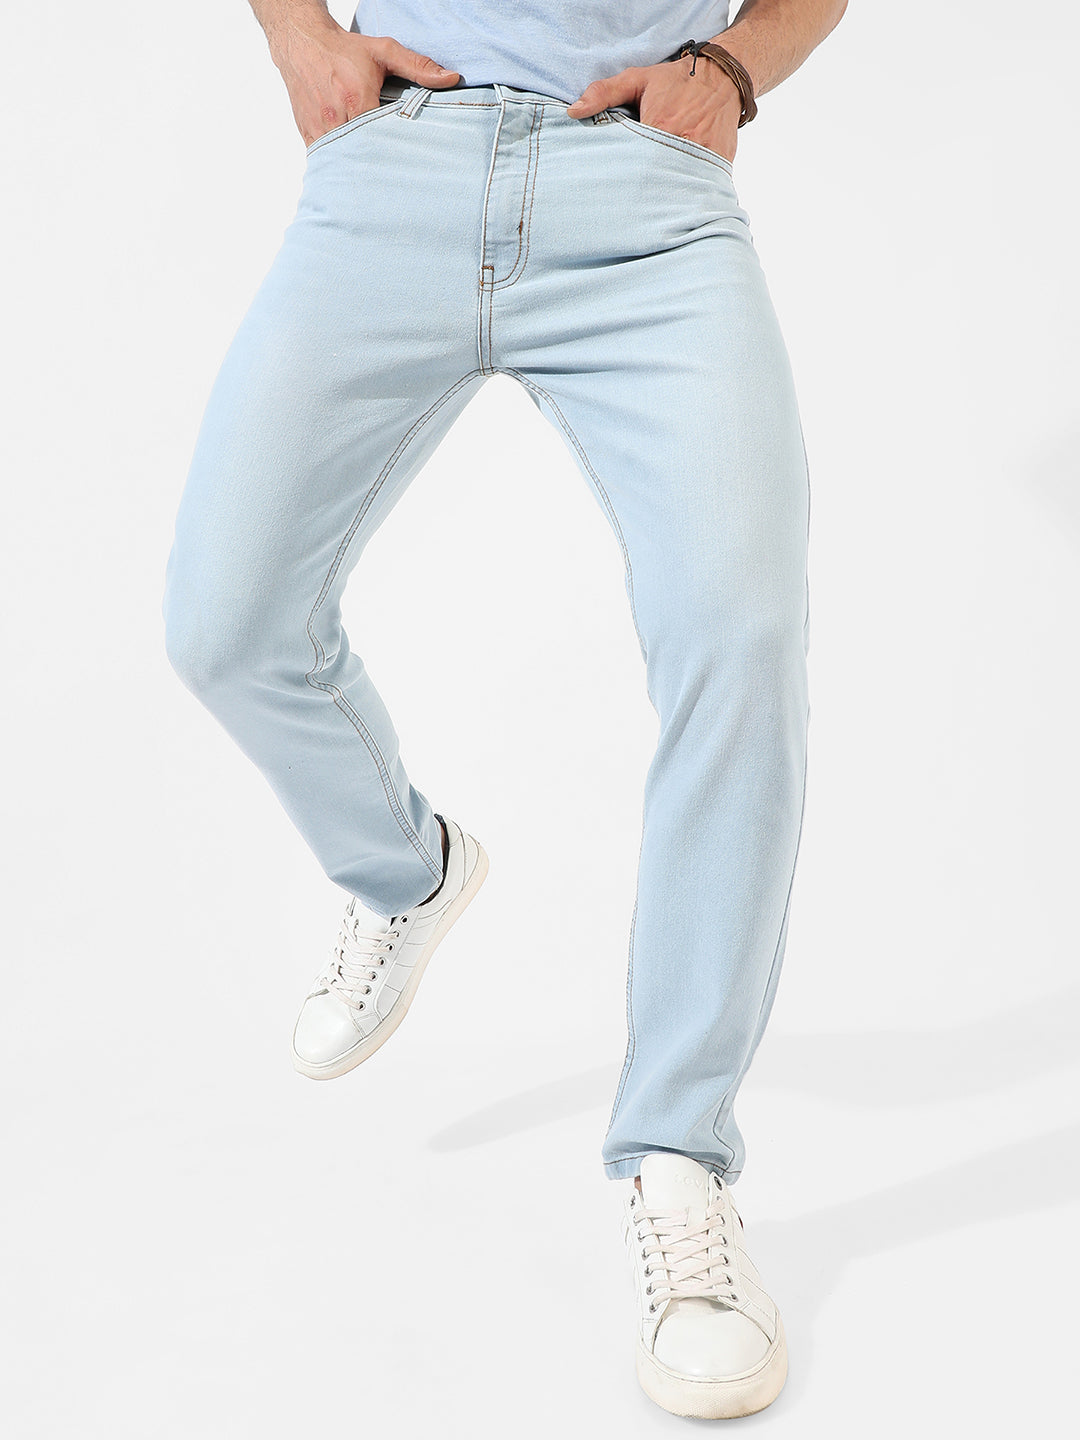 Light-Washed Denim Jeans